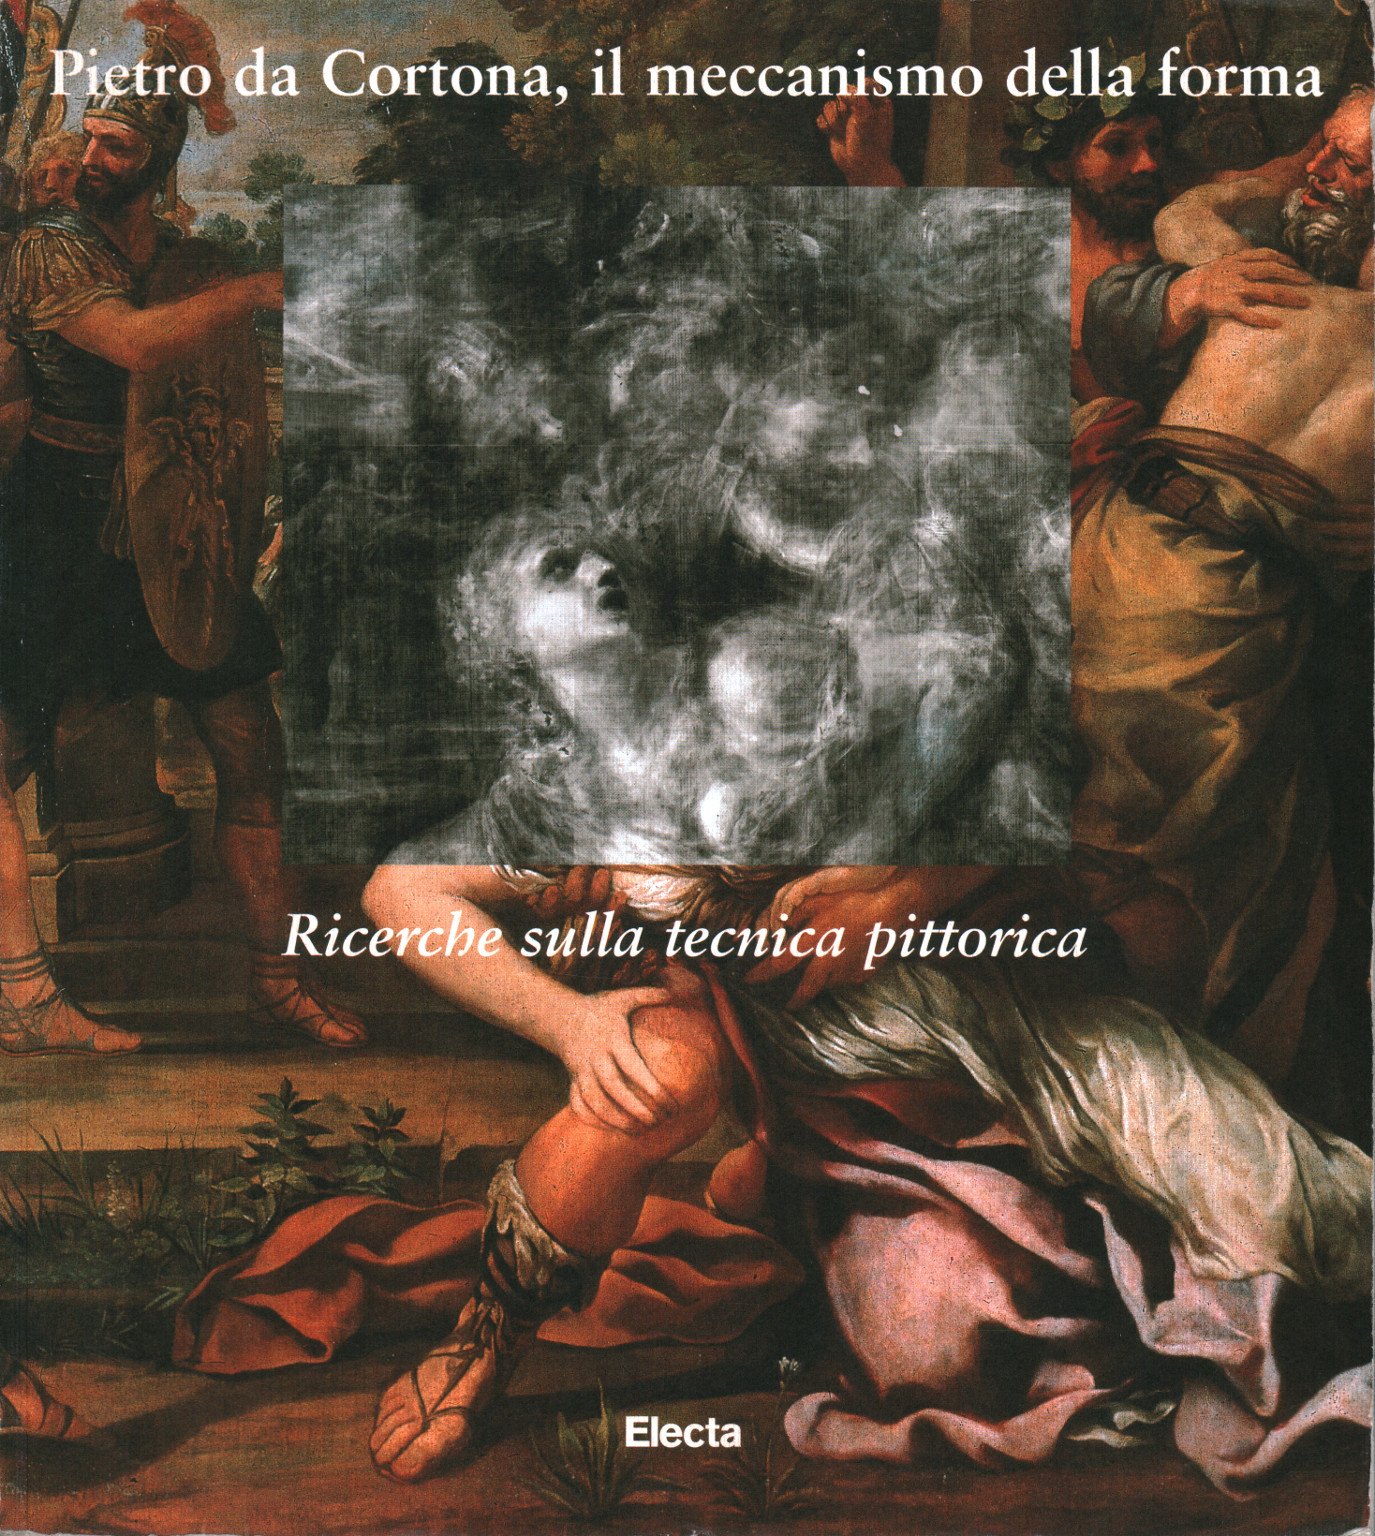 Pietro da Cortona, il meccanismo della forma. Rice, s.a.